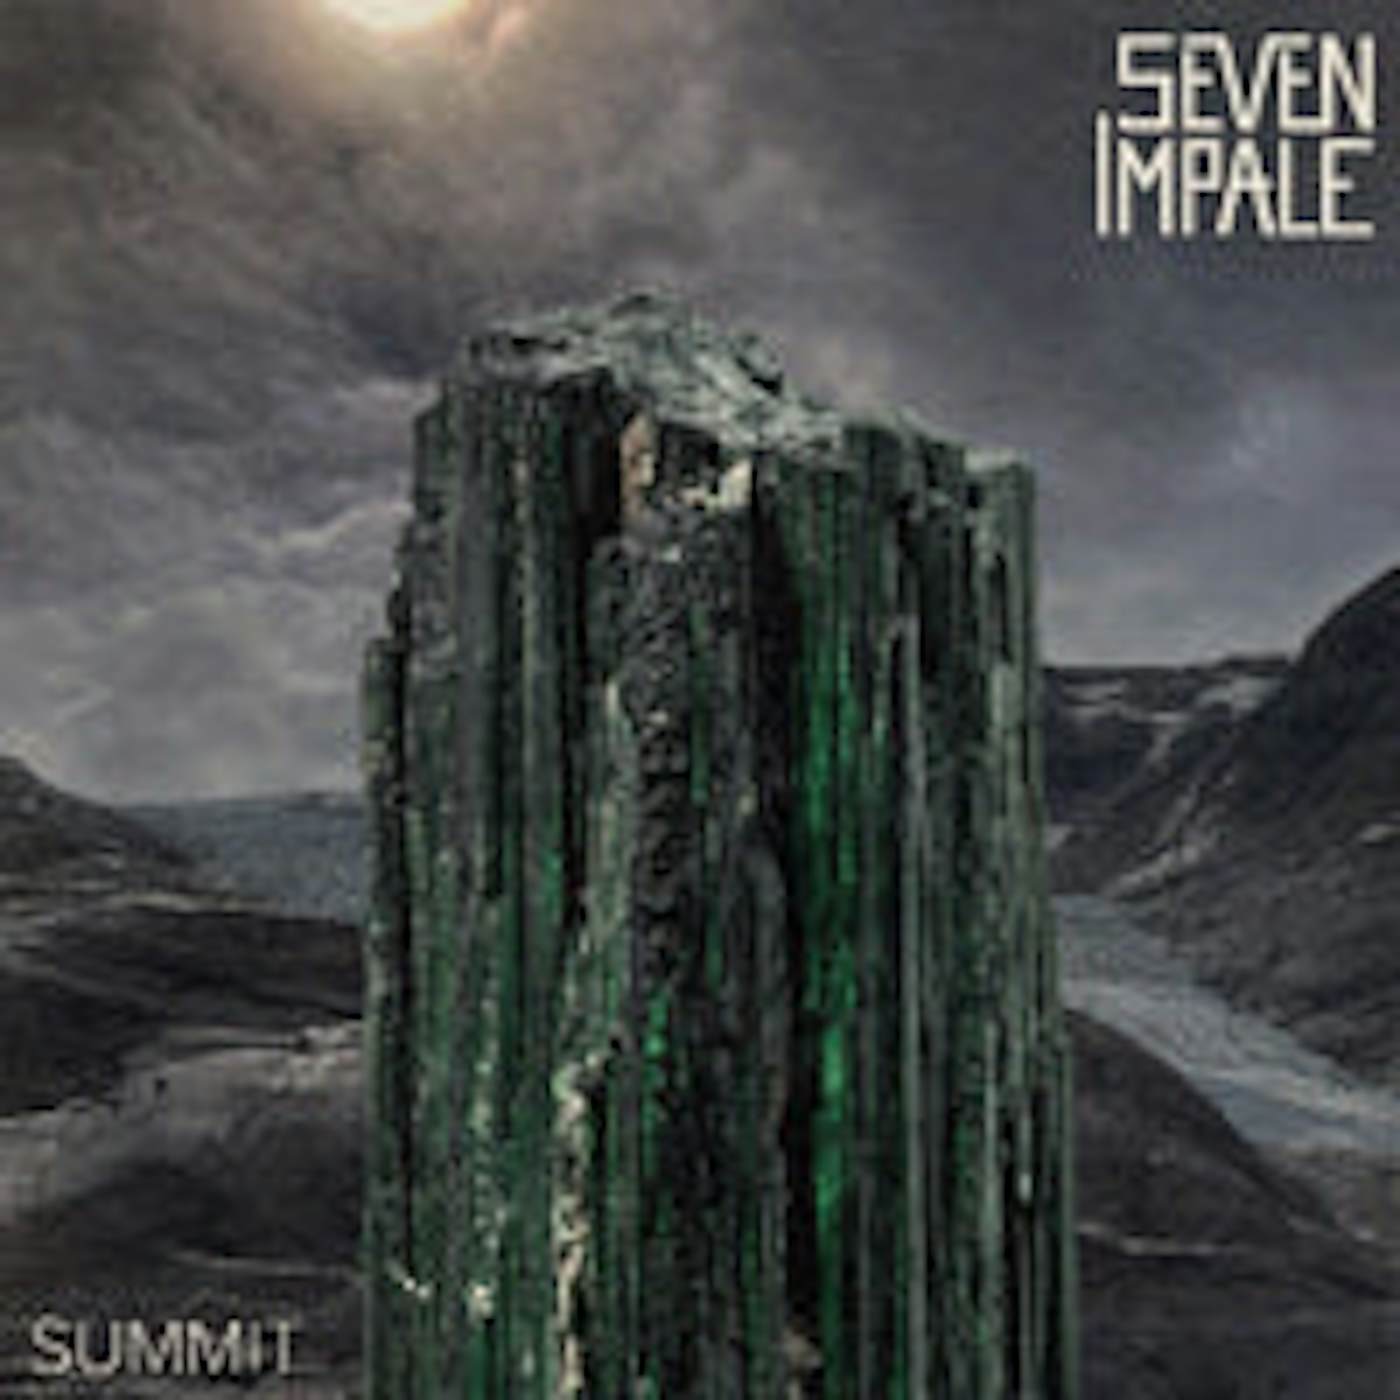 Seven Impale LP - Summit (Vinyl)